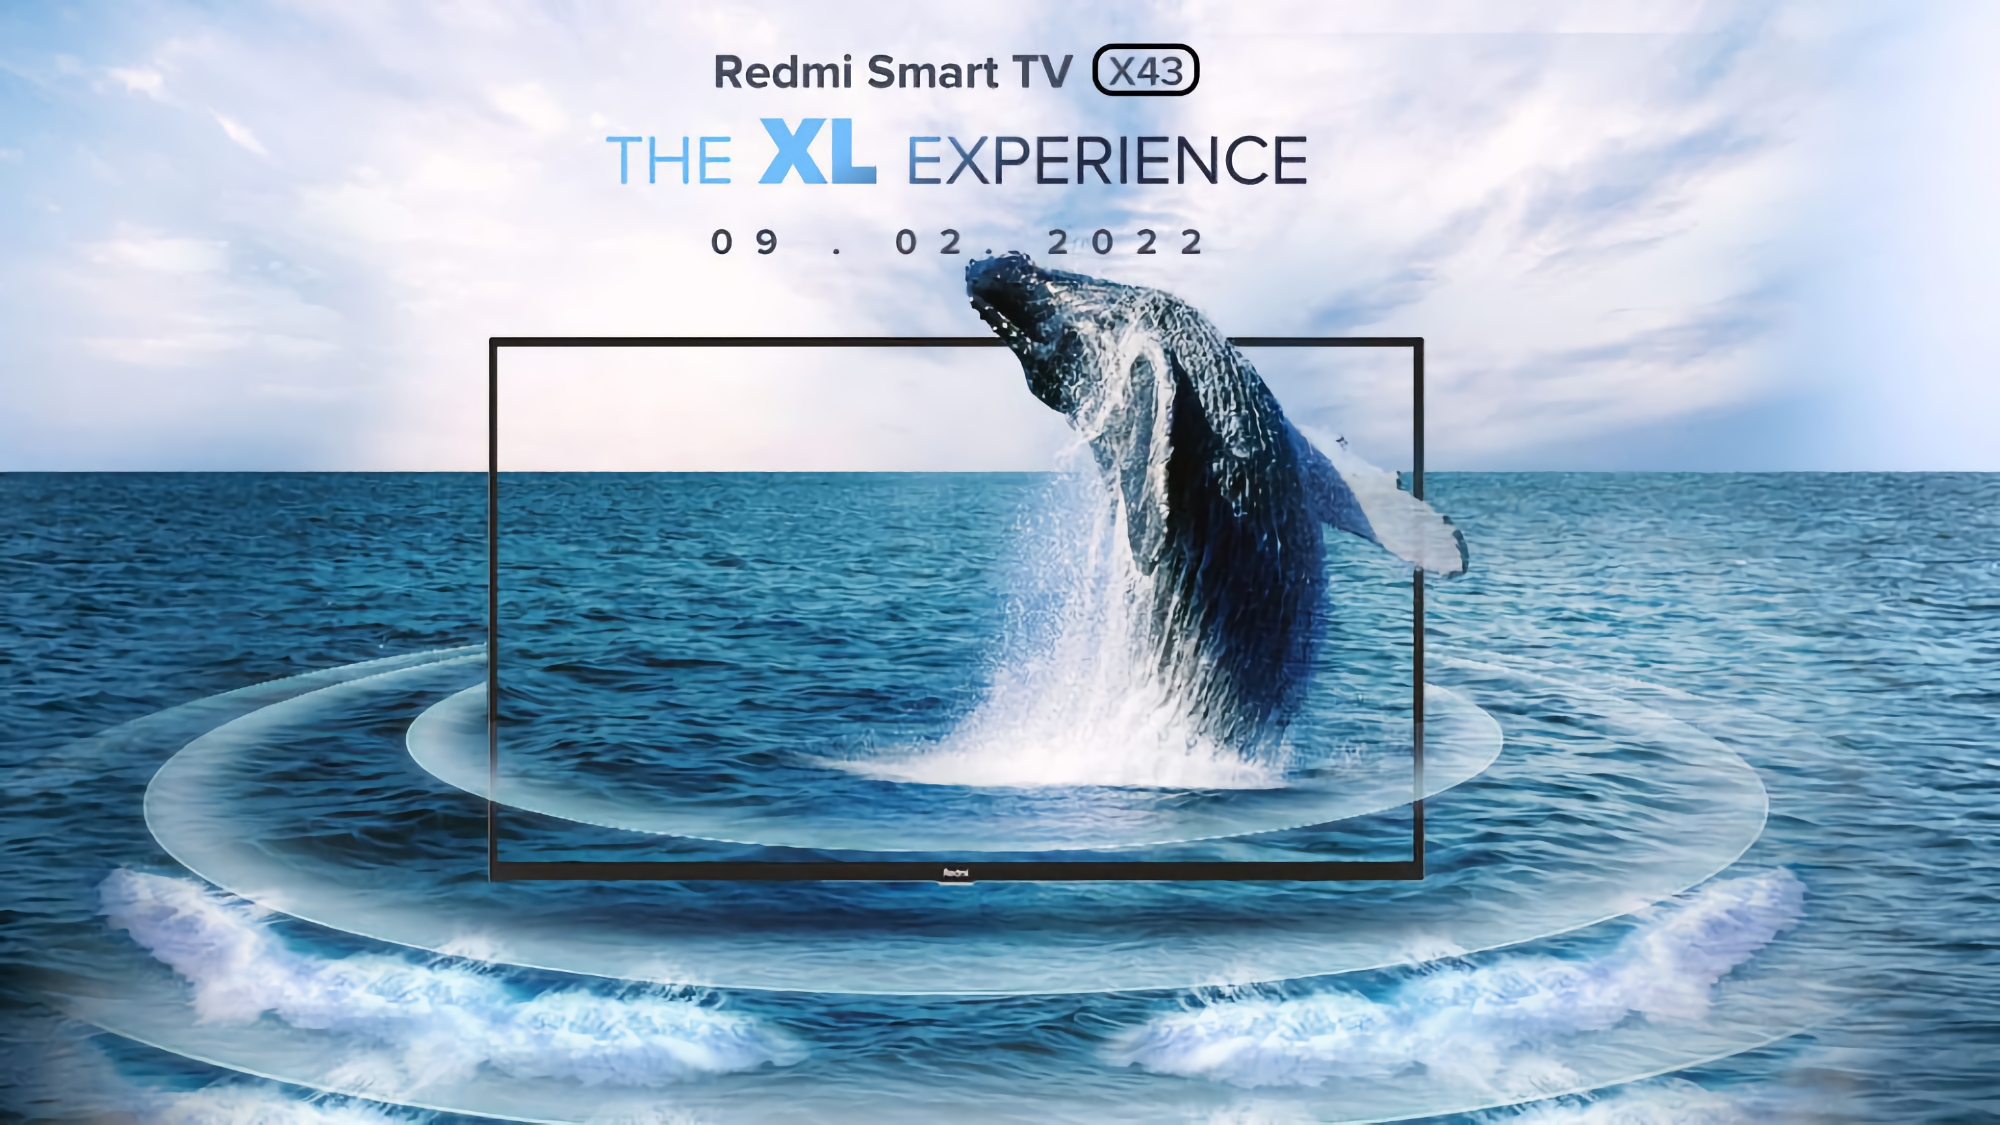 Redmi Smart TV X43 z obsługą Dolby Vision i głośnikami 30W zostanie zaprezentowany 9 lutego